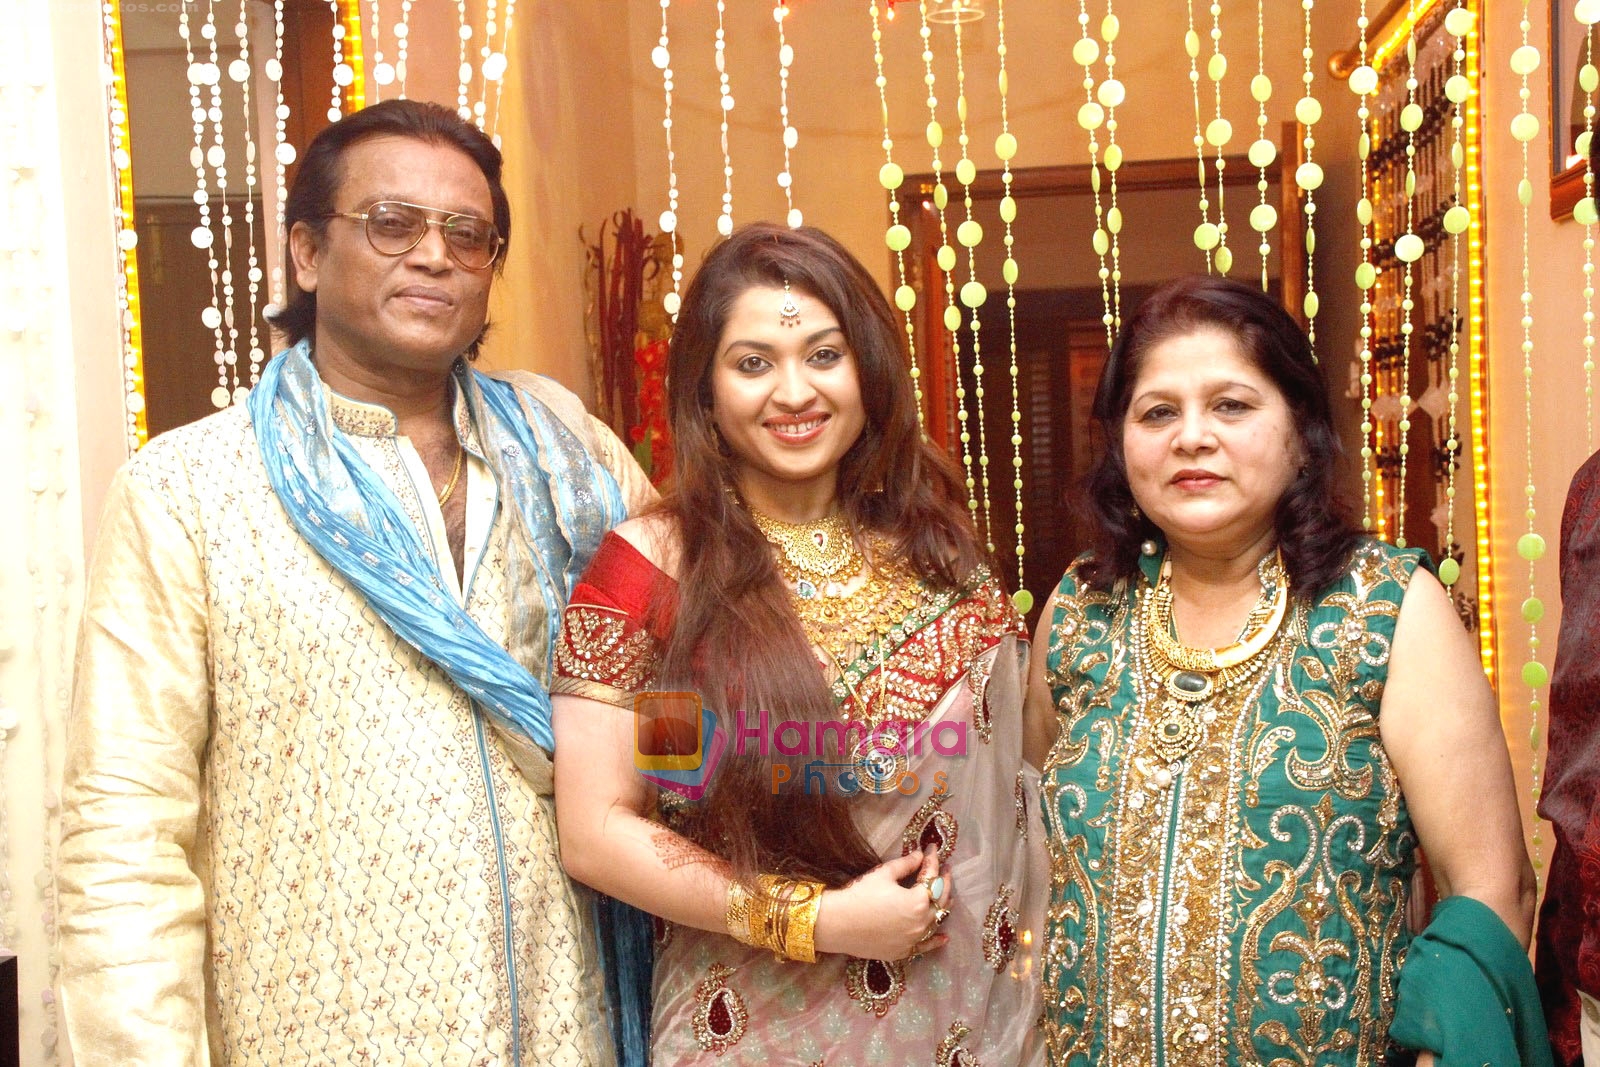 Misti Mukherjee celebrated diwali with her family